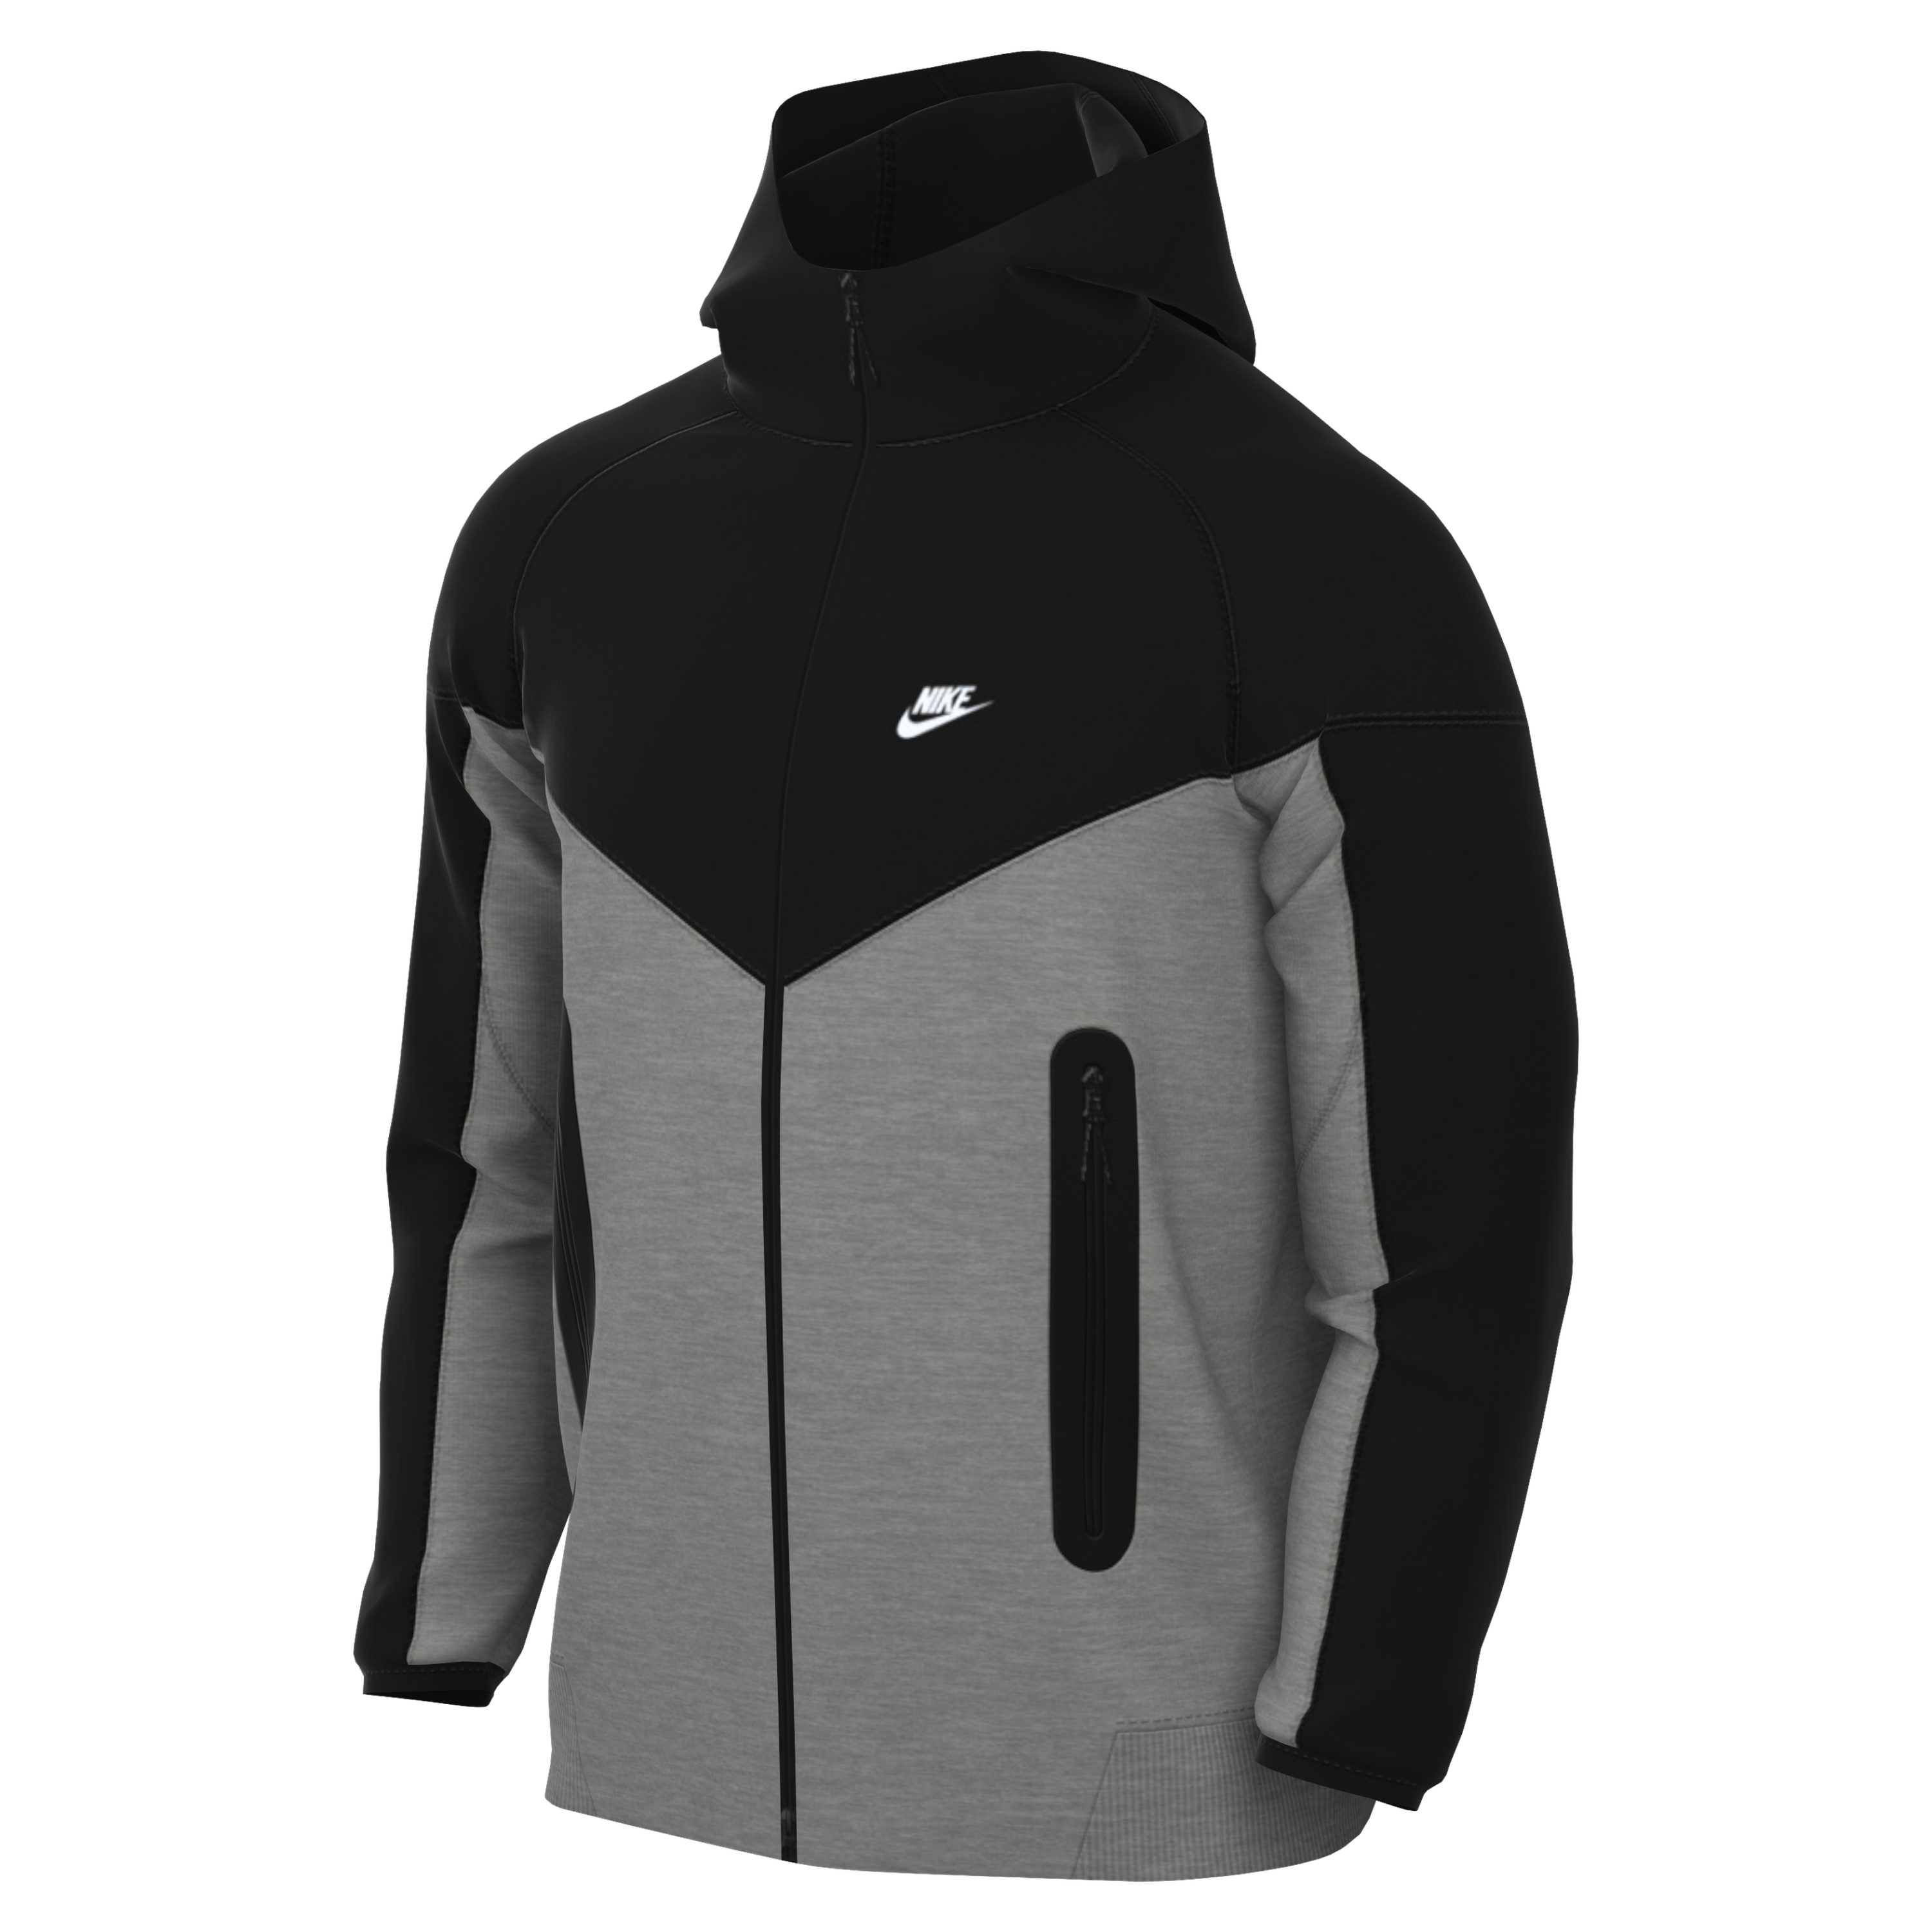 Nike Hoodie Nike Sportswear Tech Fleece Full-Zip Windrunner